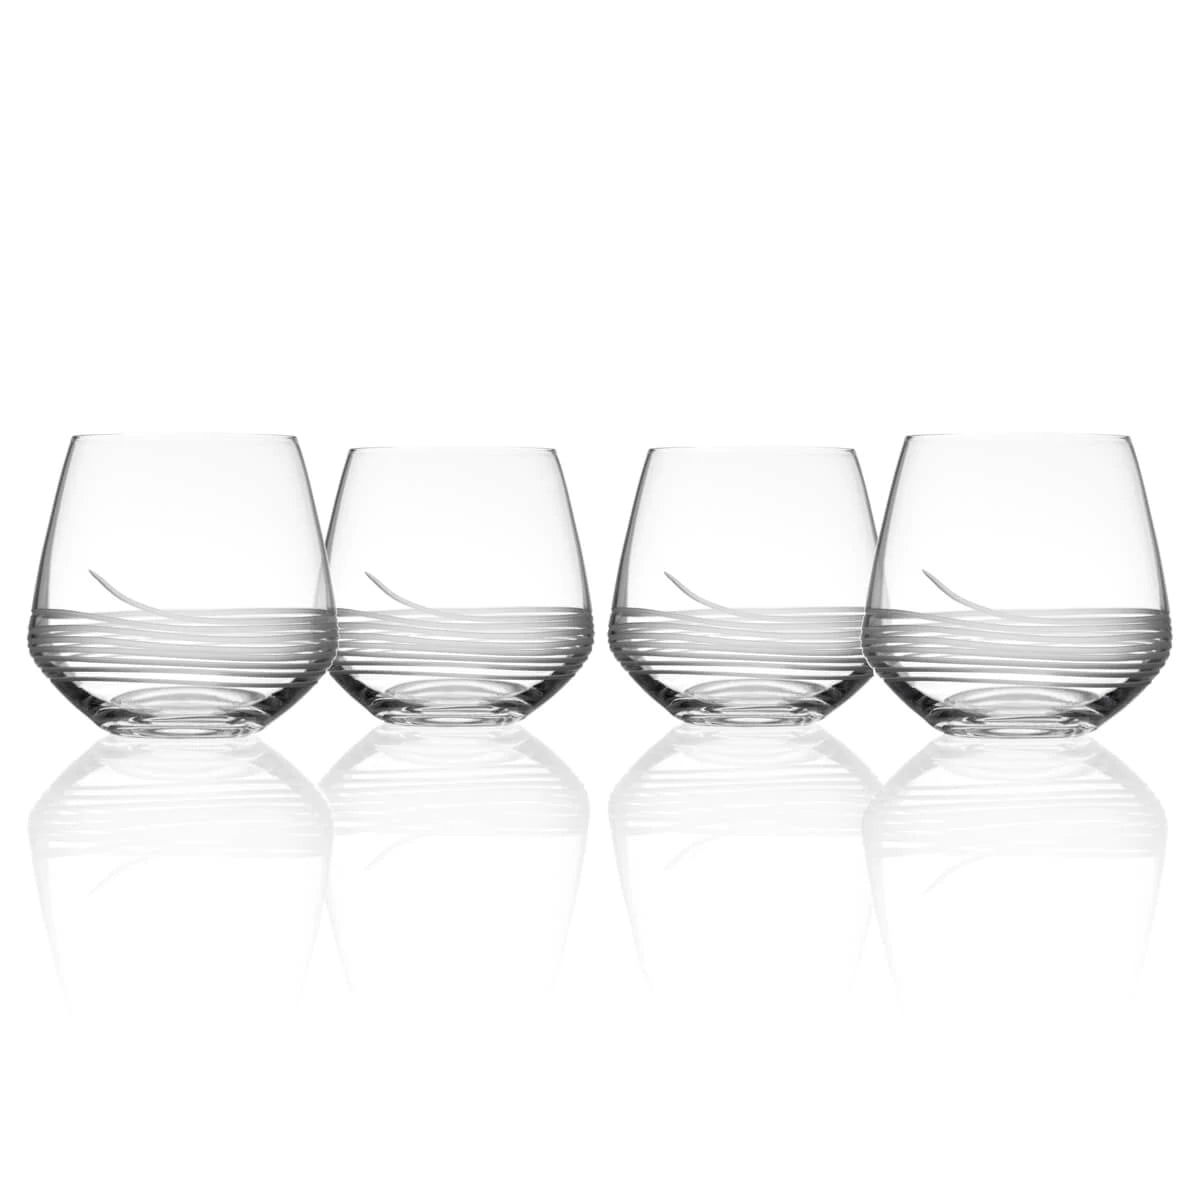 Register Mid-Century Stemless Wine Glasses, Home Bar